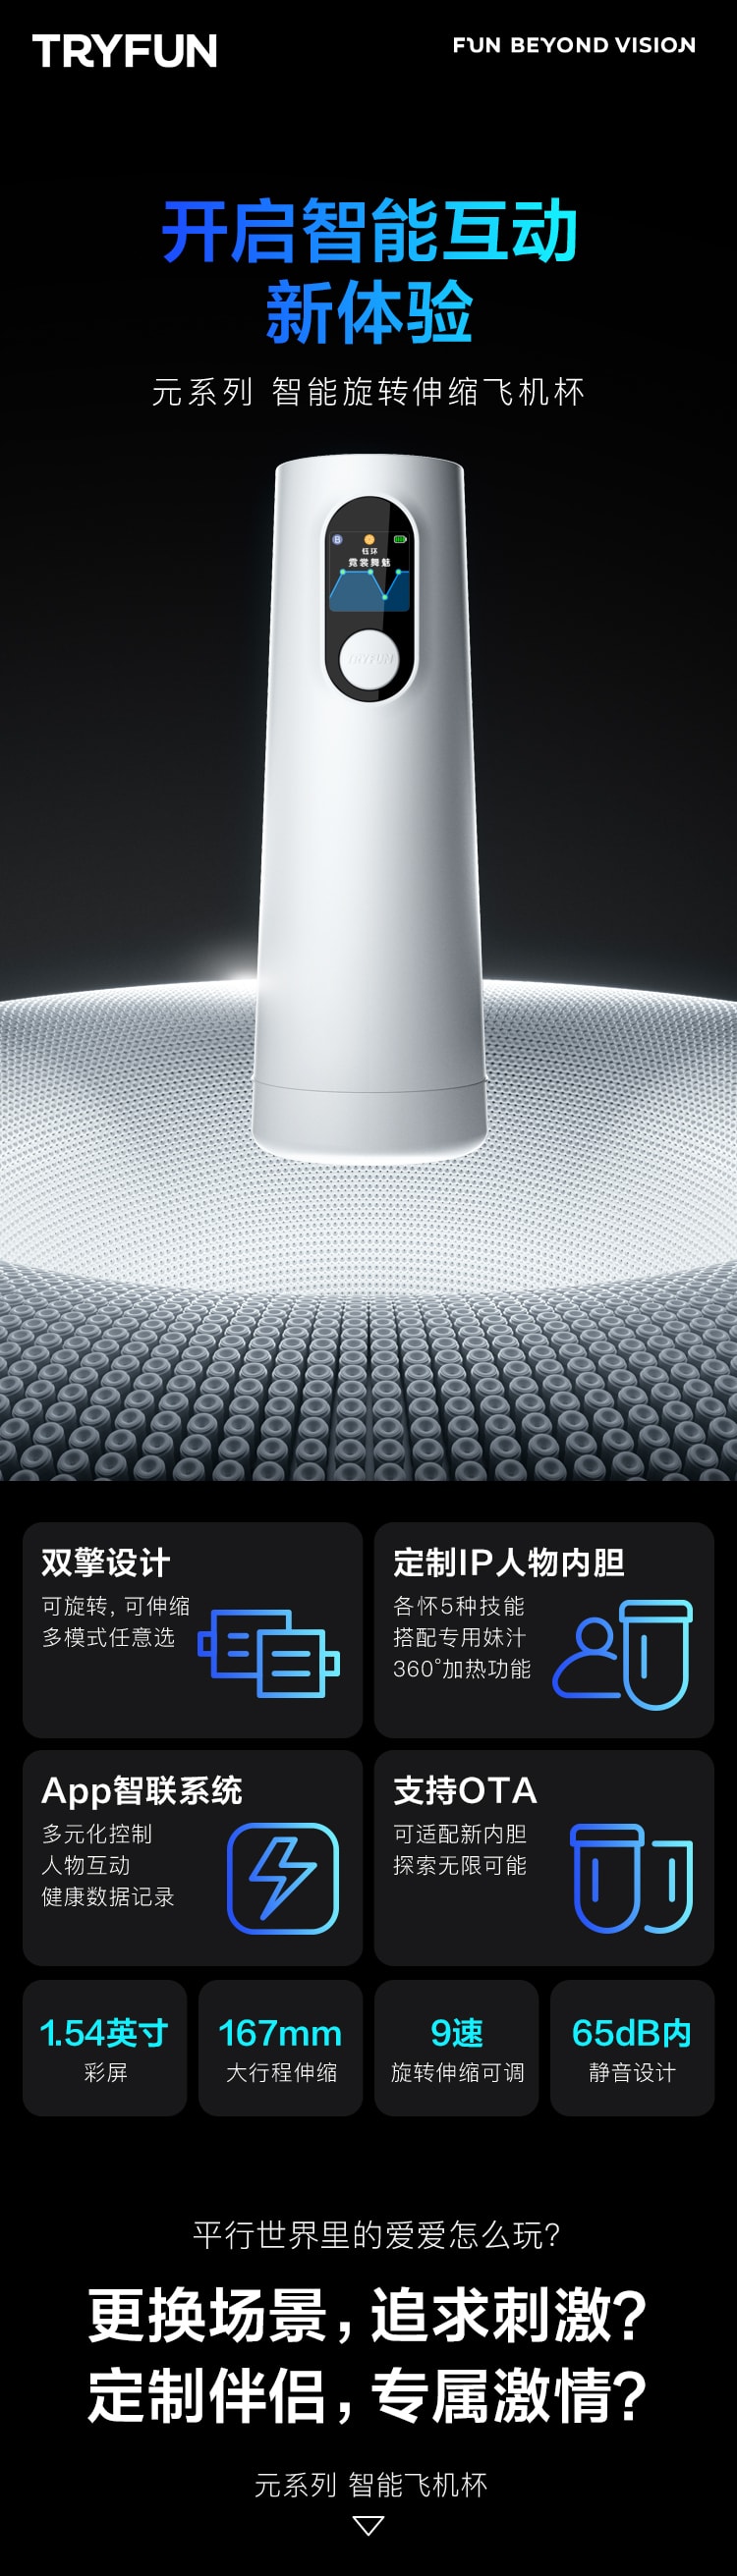 【美国现货】 中国网易春风元系列智能飞机杯白色 - 飞机杯+遥遥IP内胆+润滑液